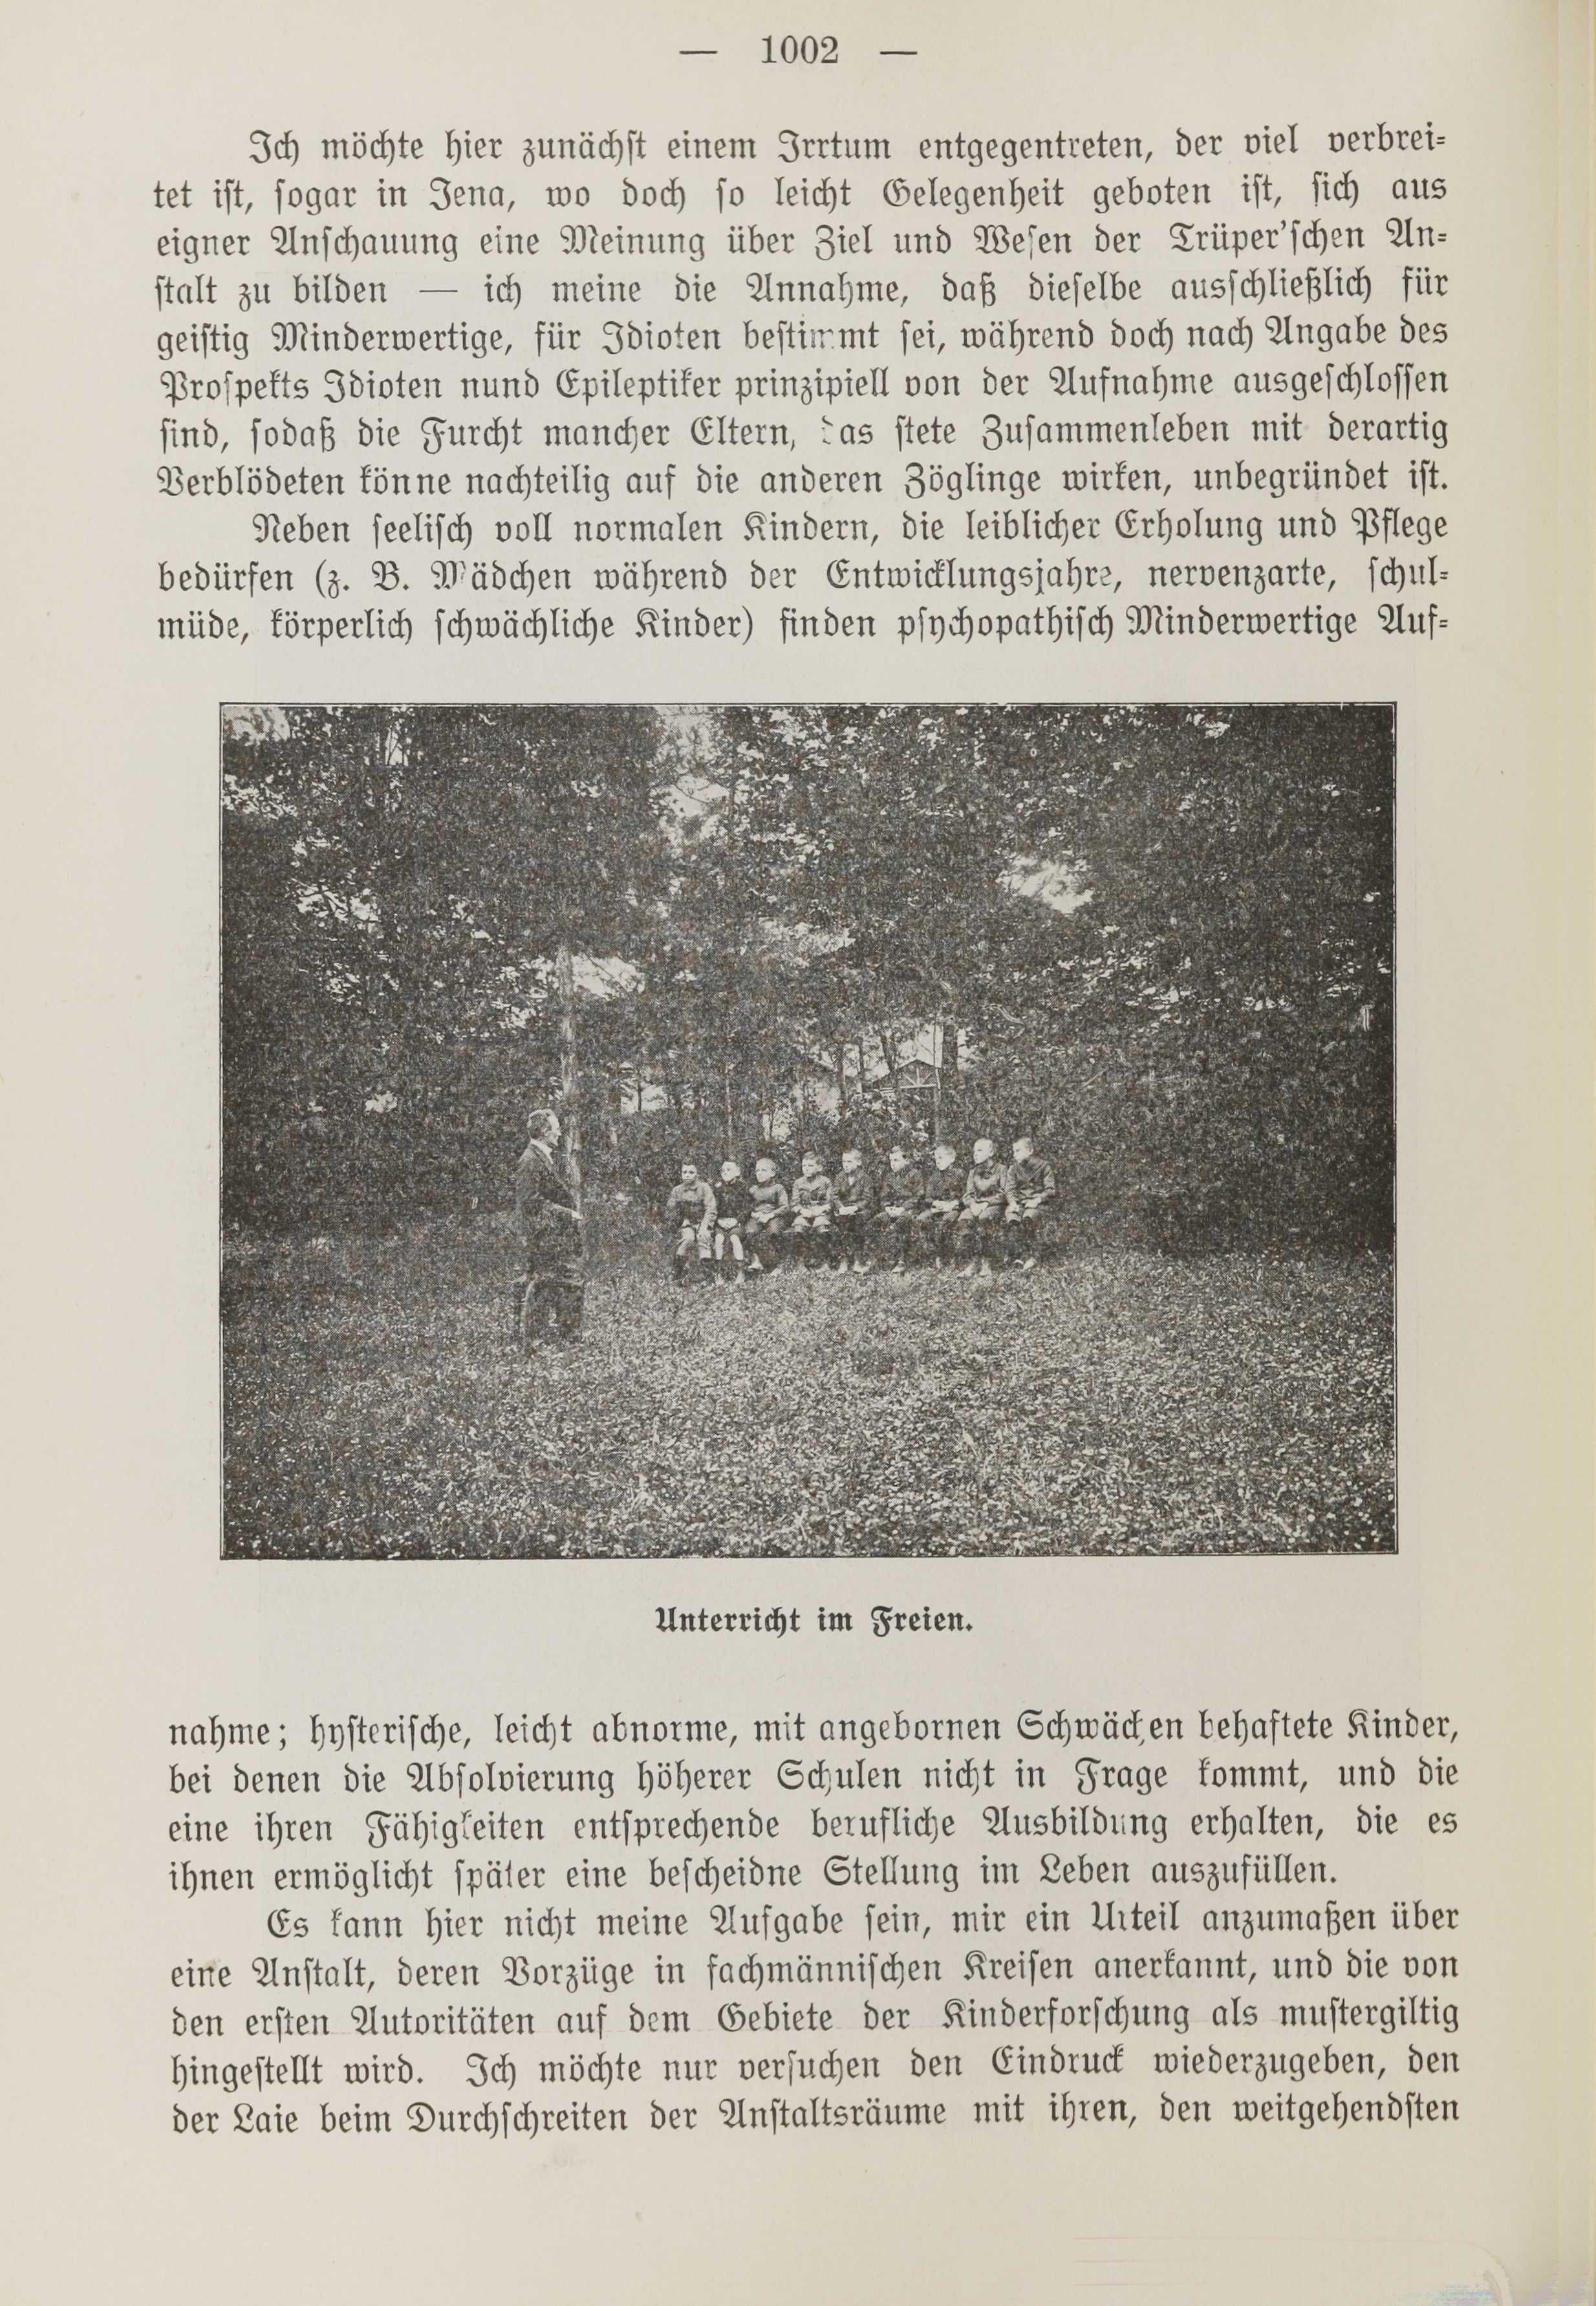 Deutsche Monatsschrift für Russland [1] (1912) | 1010. (1002) Haupttext